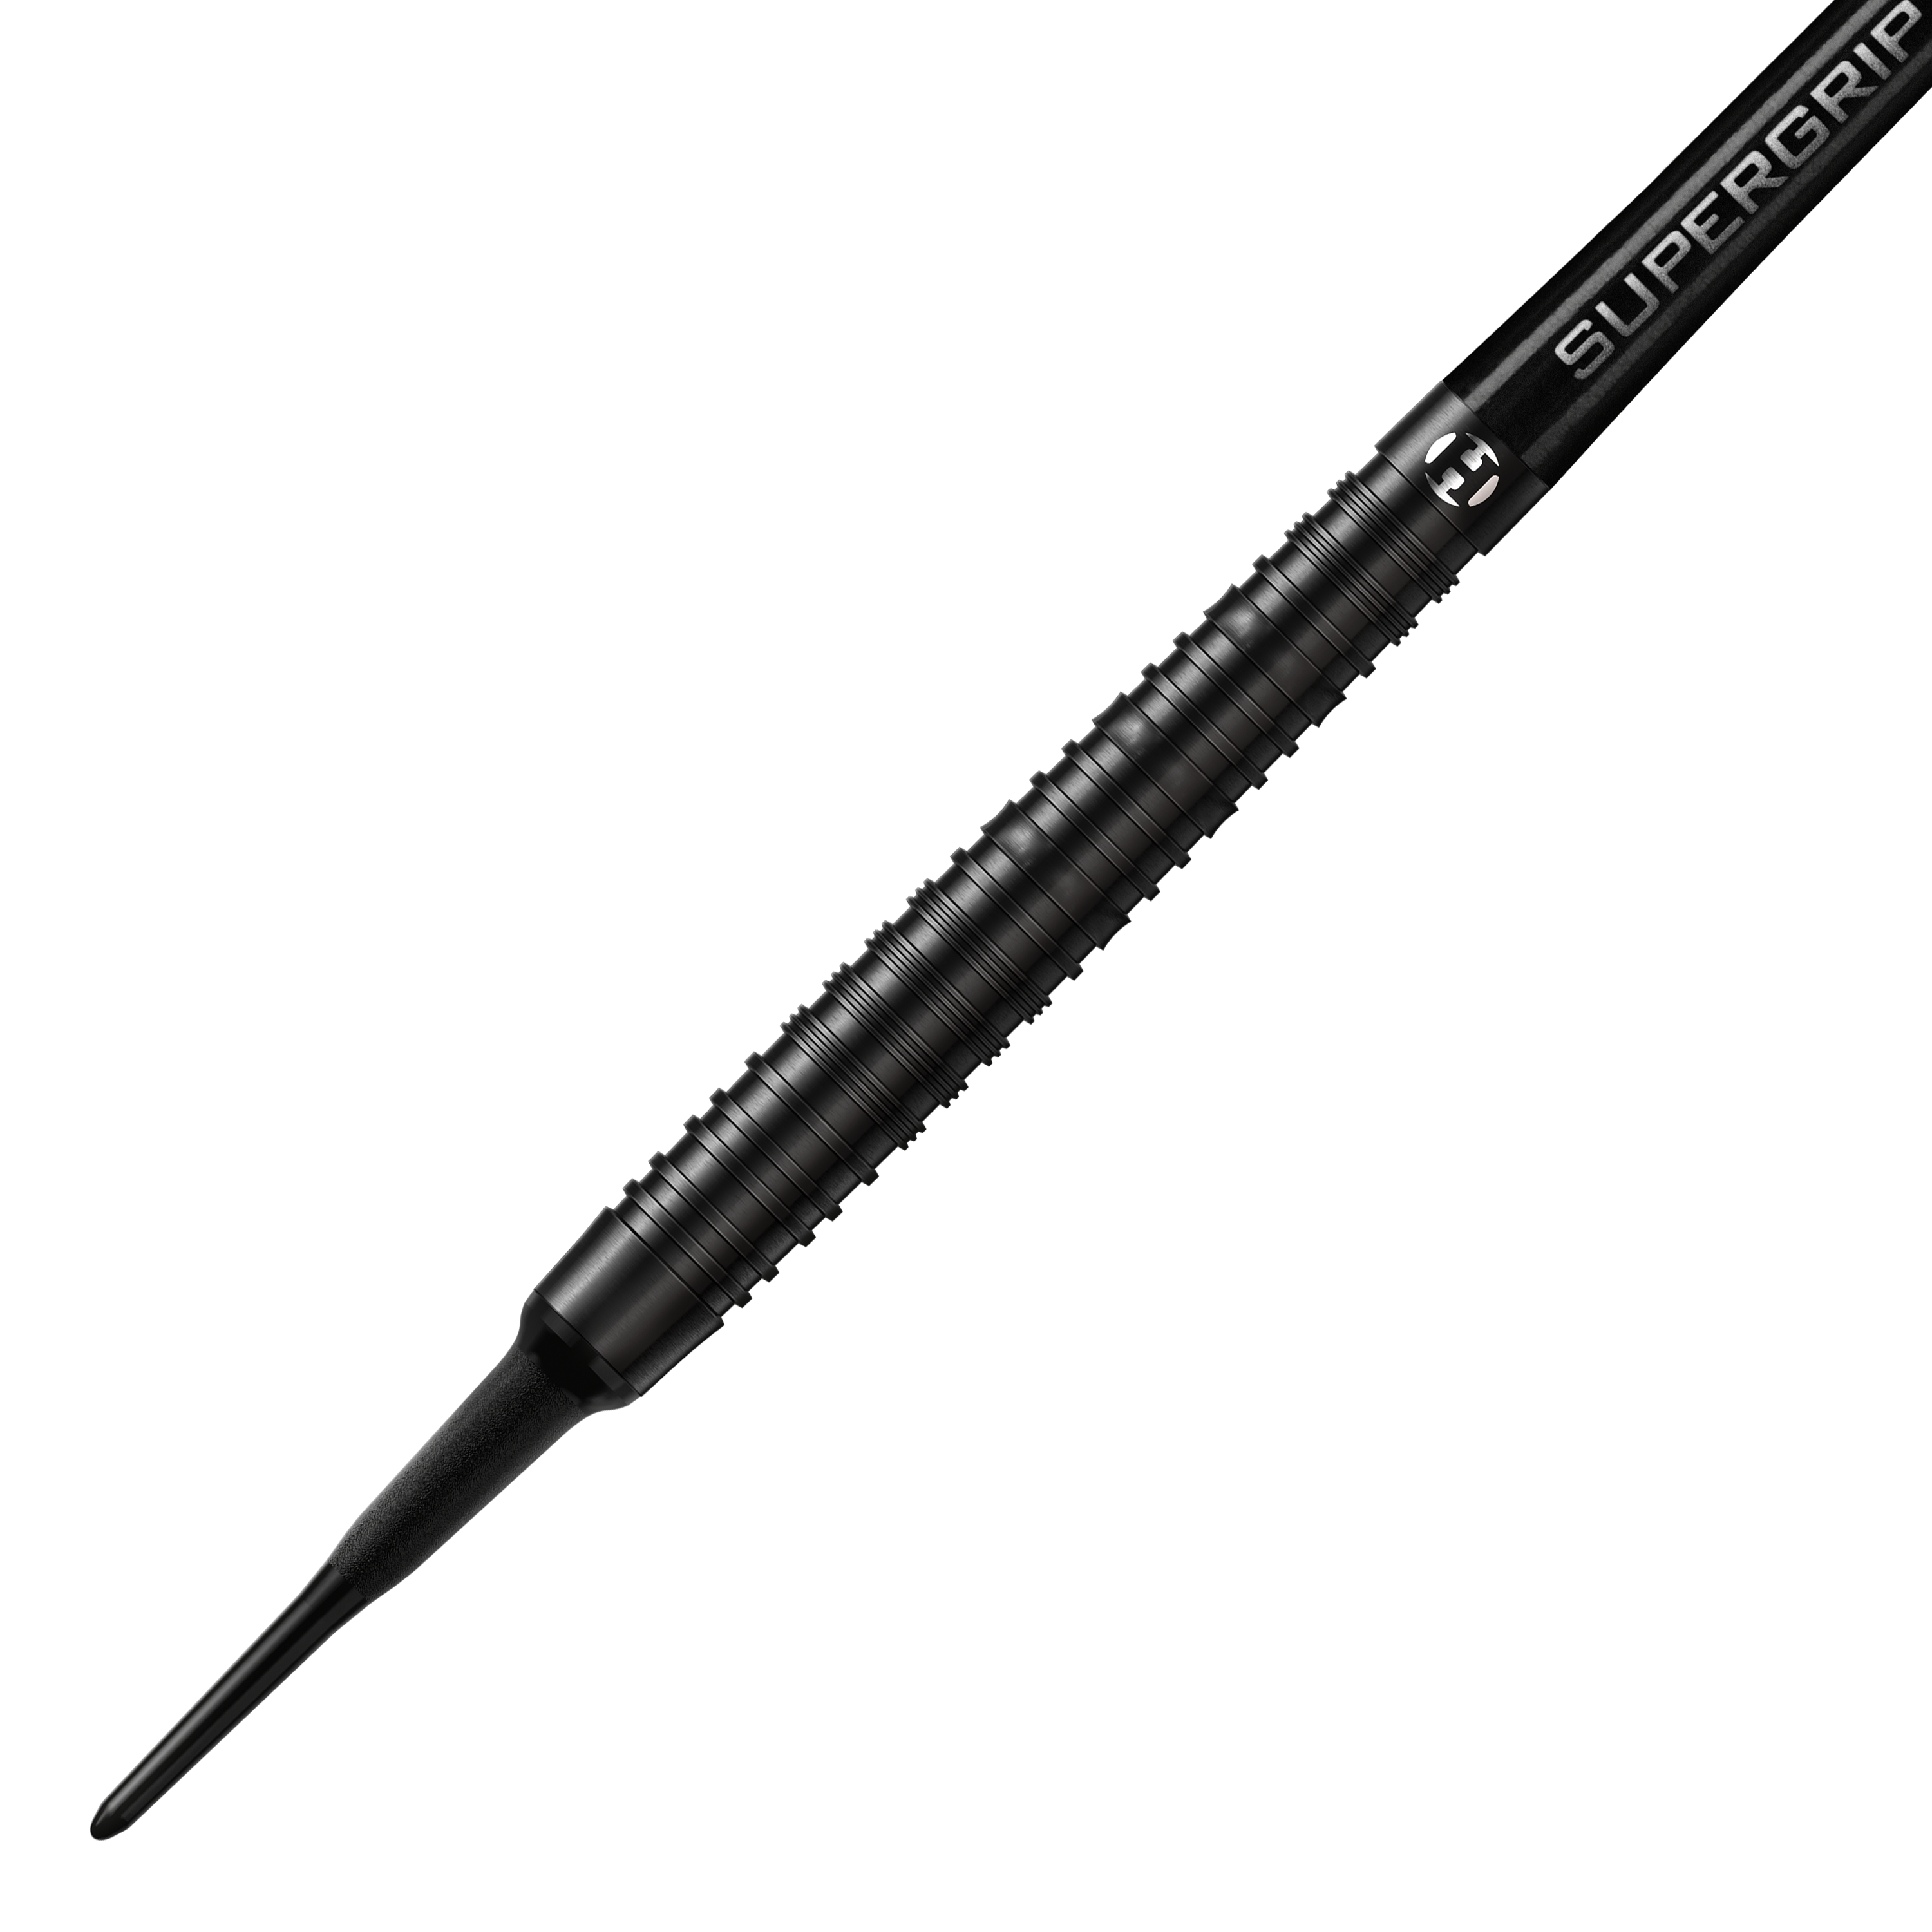 Dardos blandos Harrows NX90 Black Edition